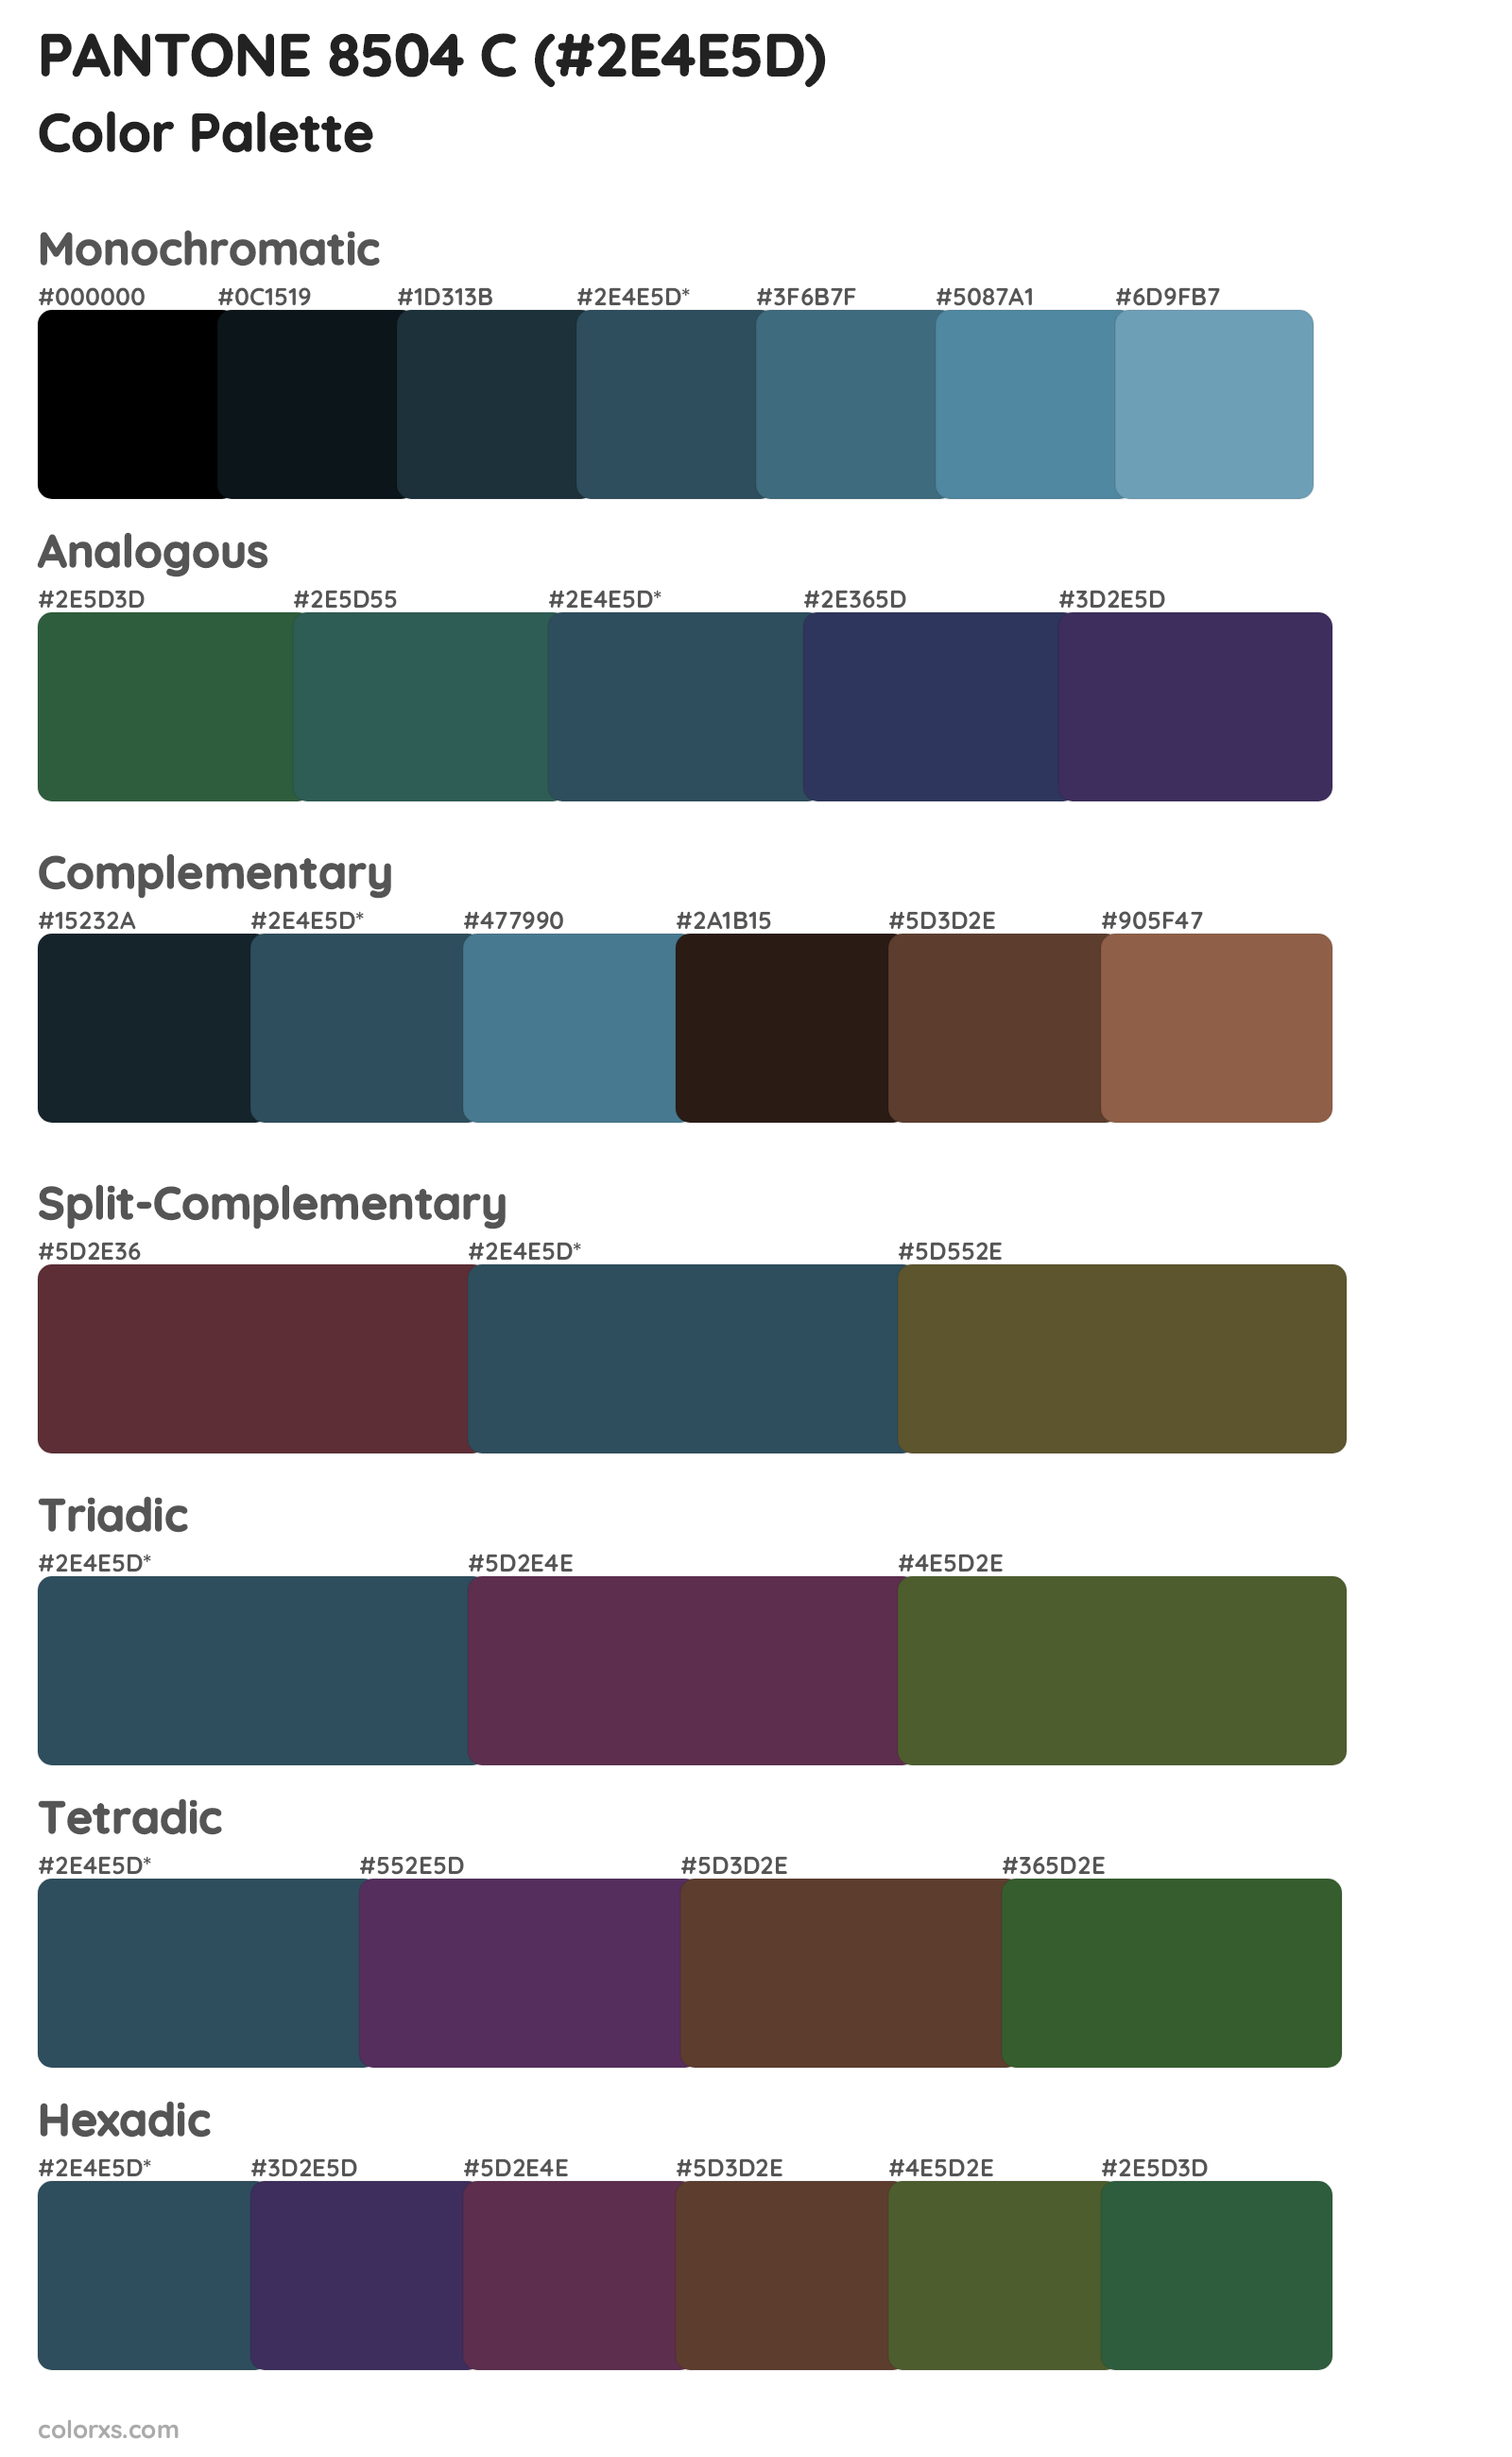 PANTONE 8504 C Color Scheme Palettes